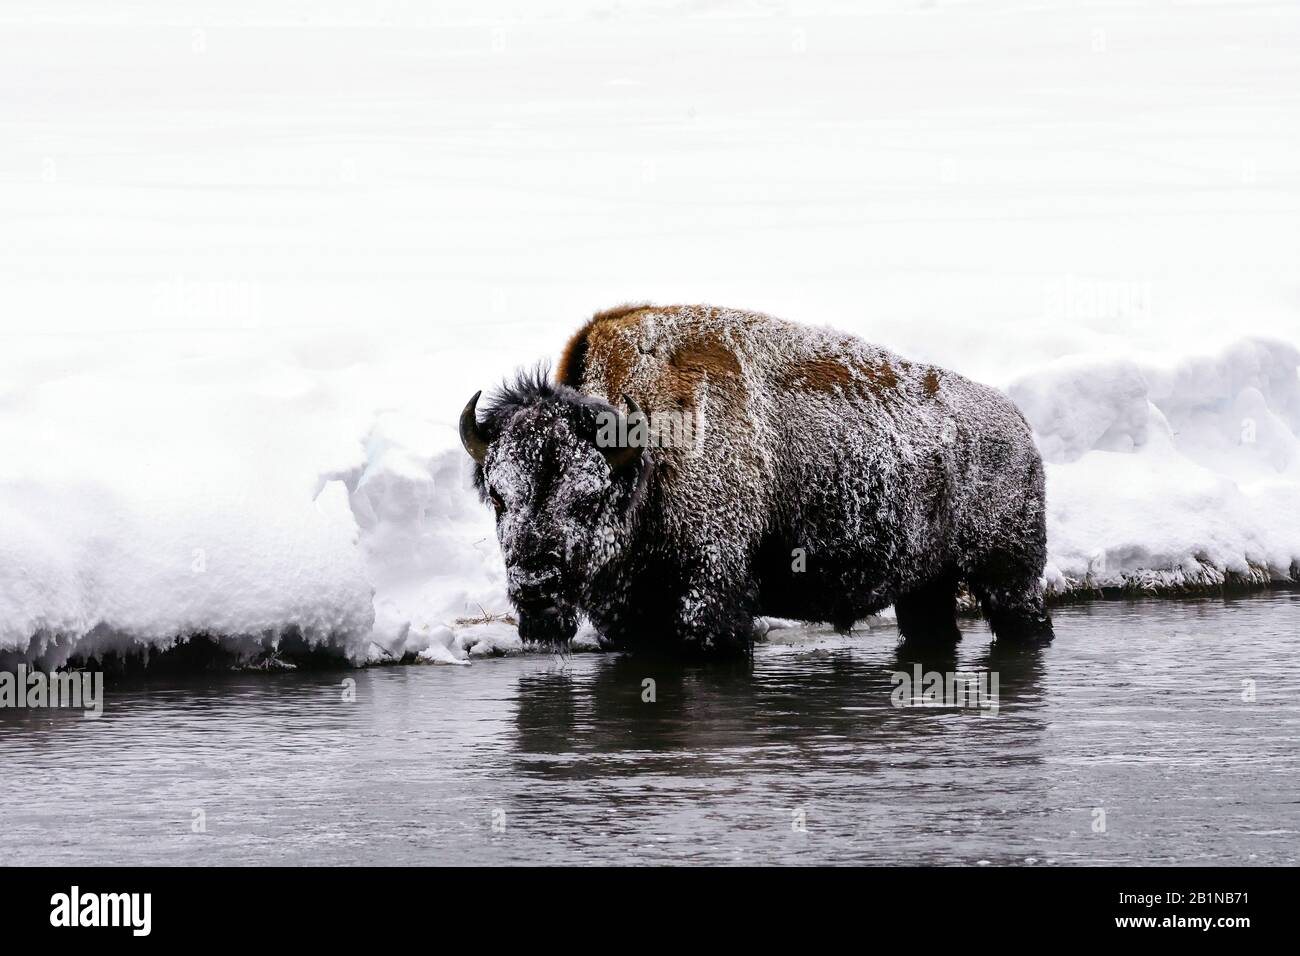 Bisonte americano, búfalo (bisonte), de pie en aguas poco profundas en frío helado, vista lateral, Estados Unidos, Wyoming, Parque Nacional Yellowstone Foto de stock